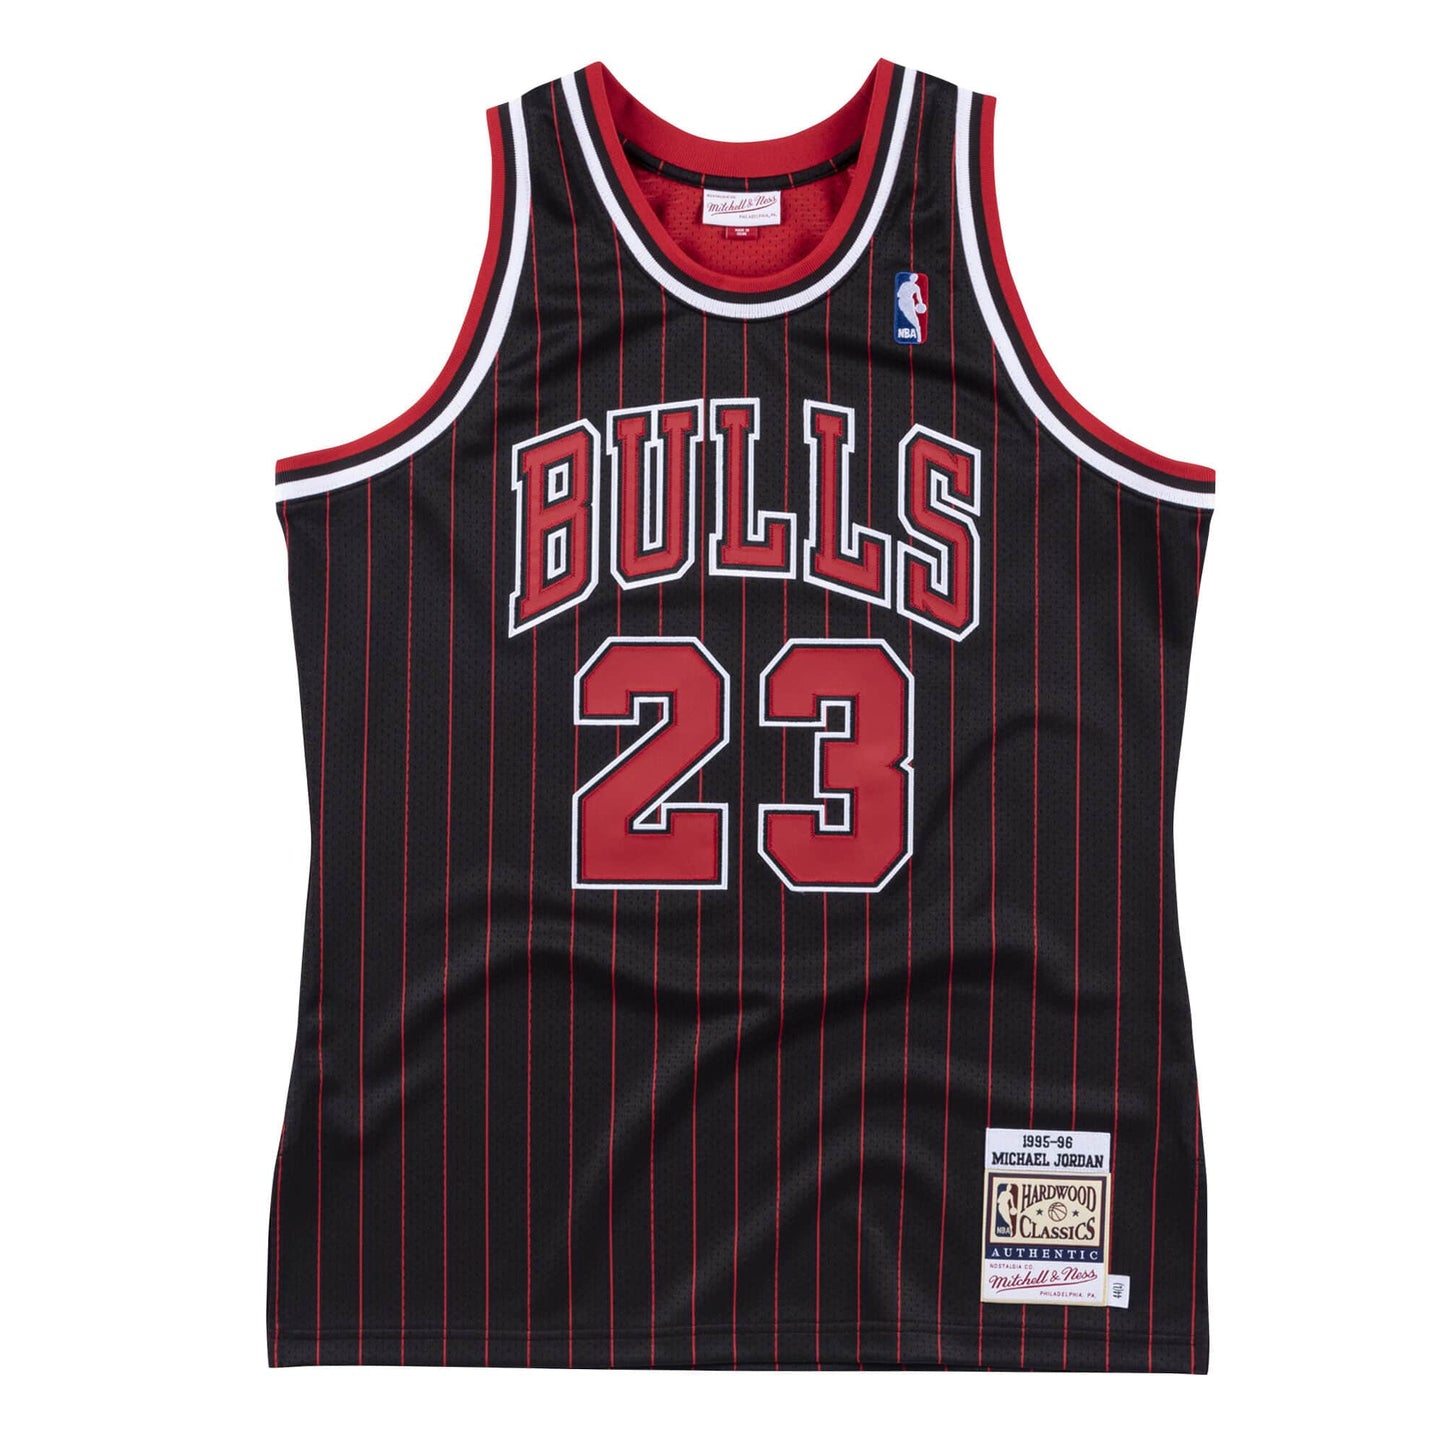 Authentic Jersey Chicago Bulls 1995-96 Michael Jordans